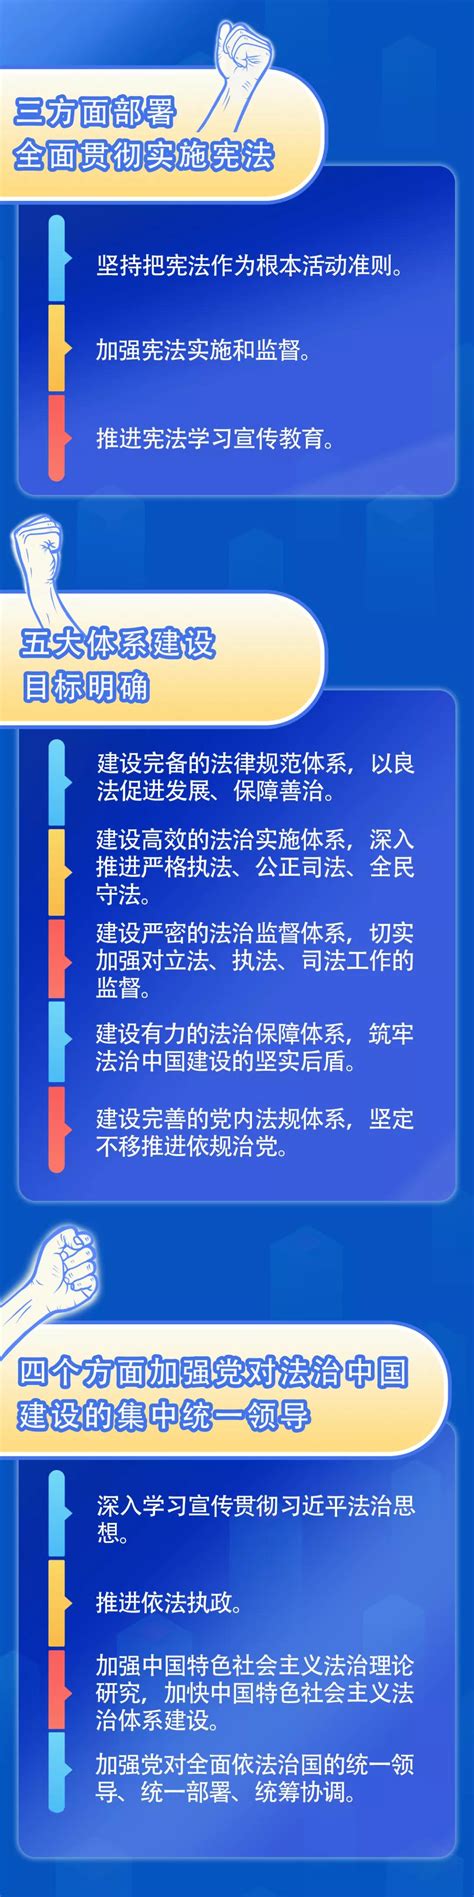 一图读懂《法治中国建设规划（2020－2025年）》 - 重庆市南岸区人民政府网